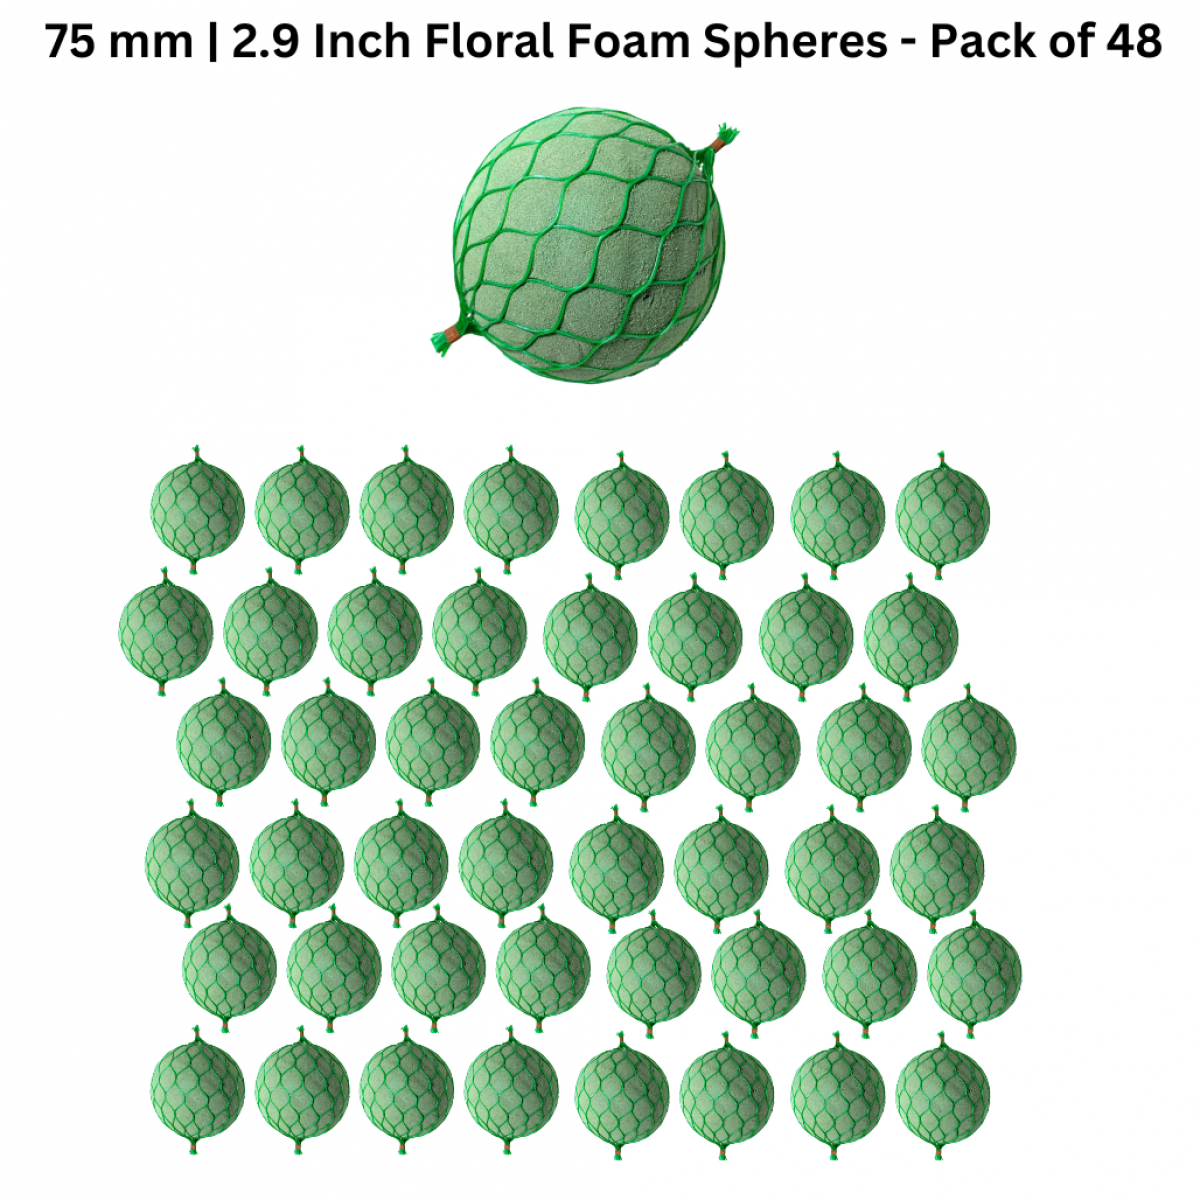 OASIS® Floral Foam Spheres